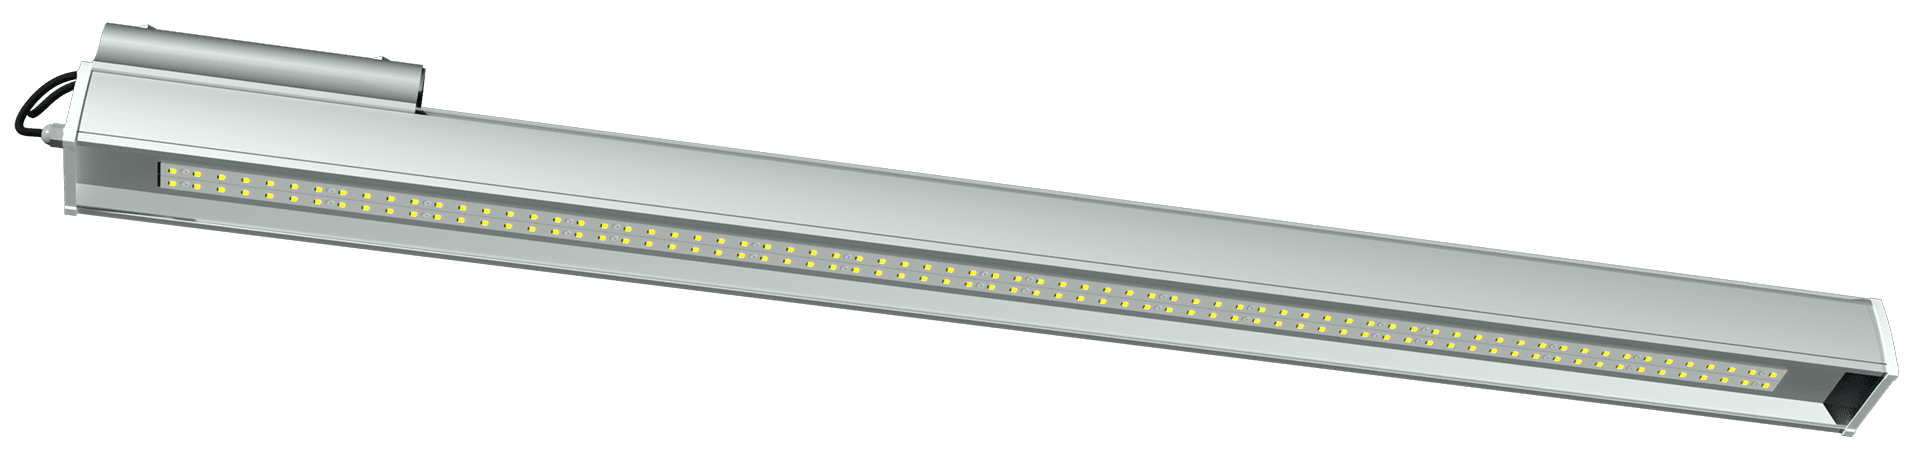 ДЕЛЕД LONG-S1-80 Переносные светильники